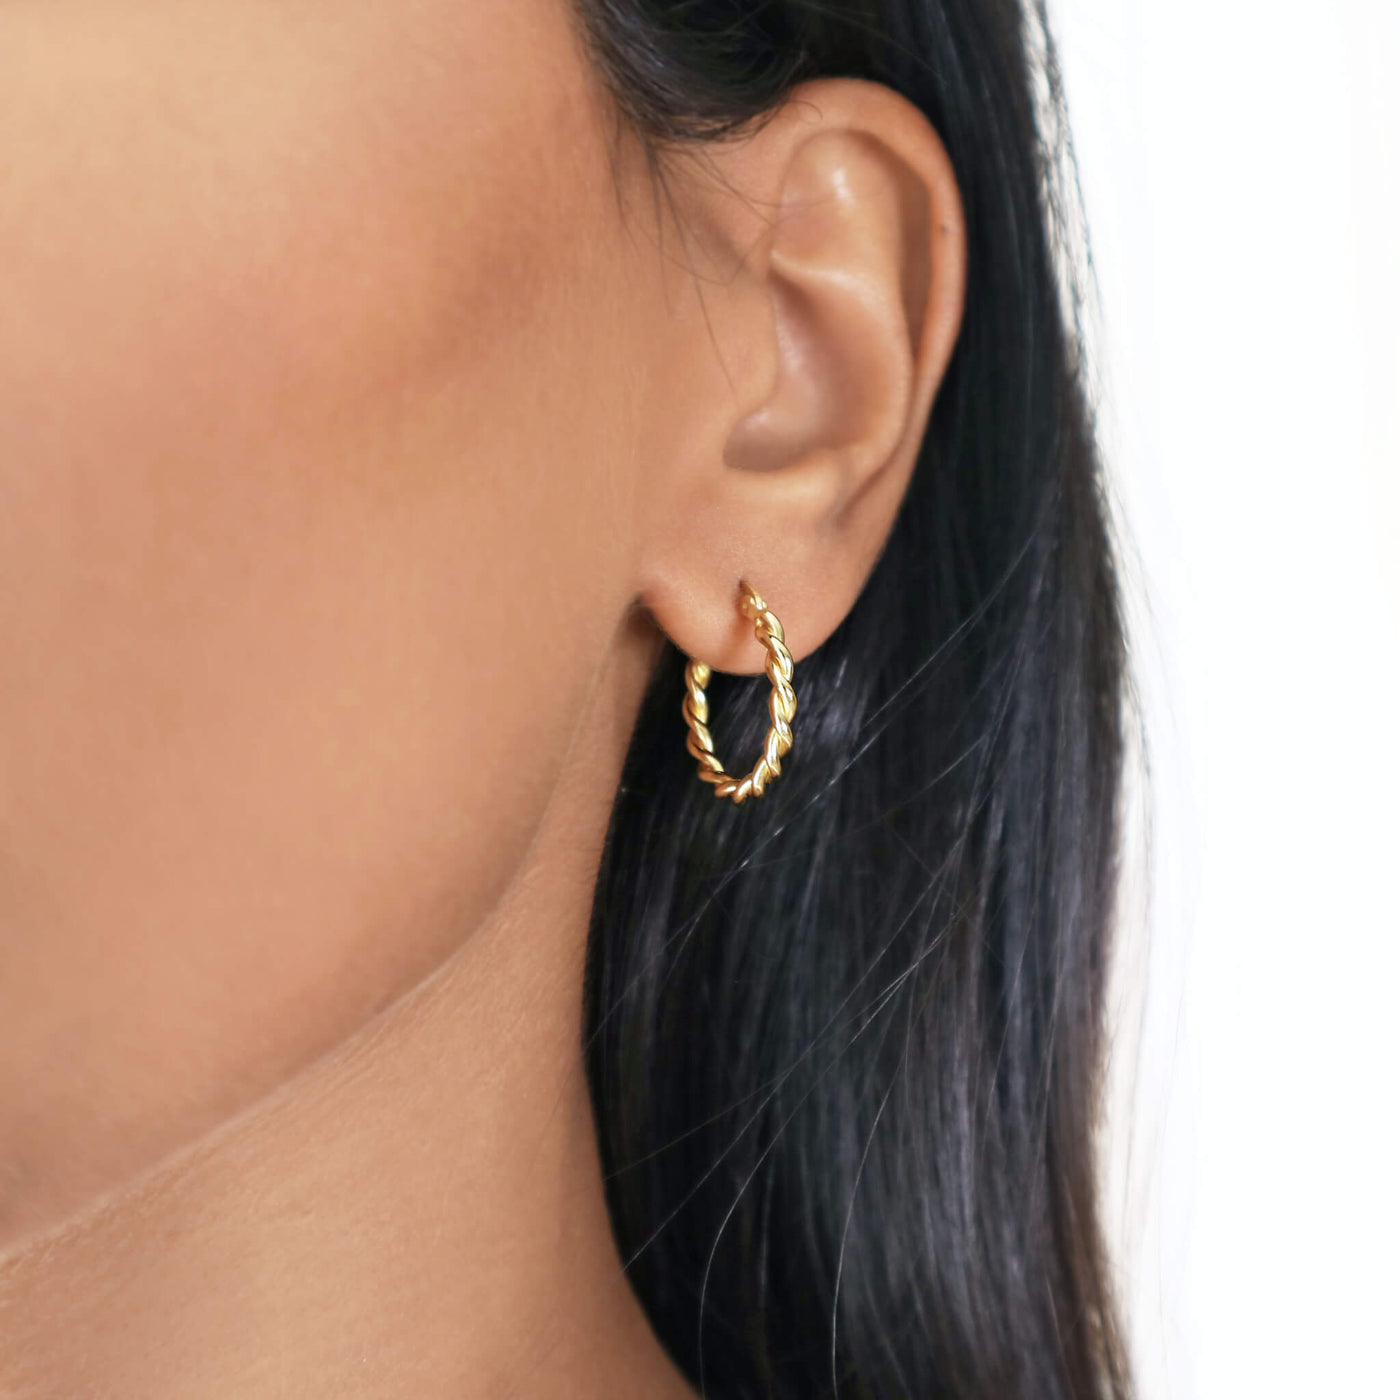 Small gold twist hoop earrings, Rani & Co. jewellery